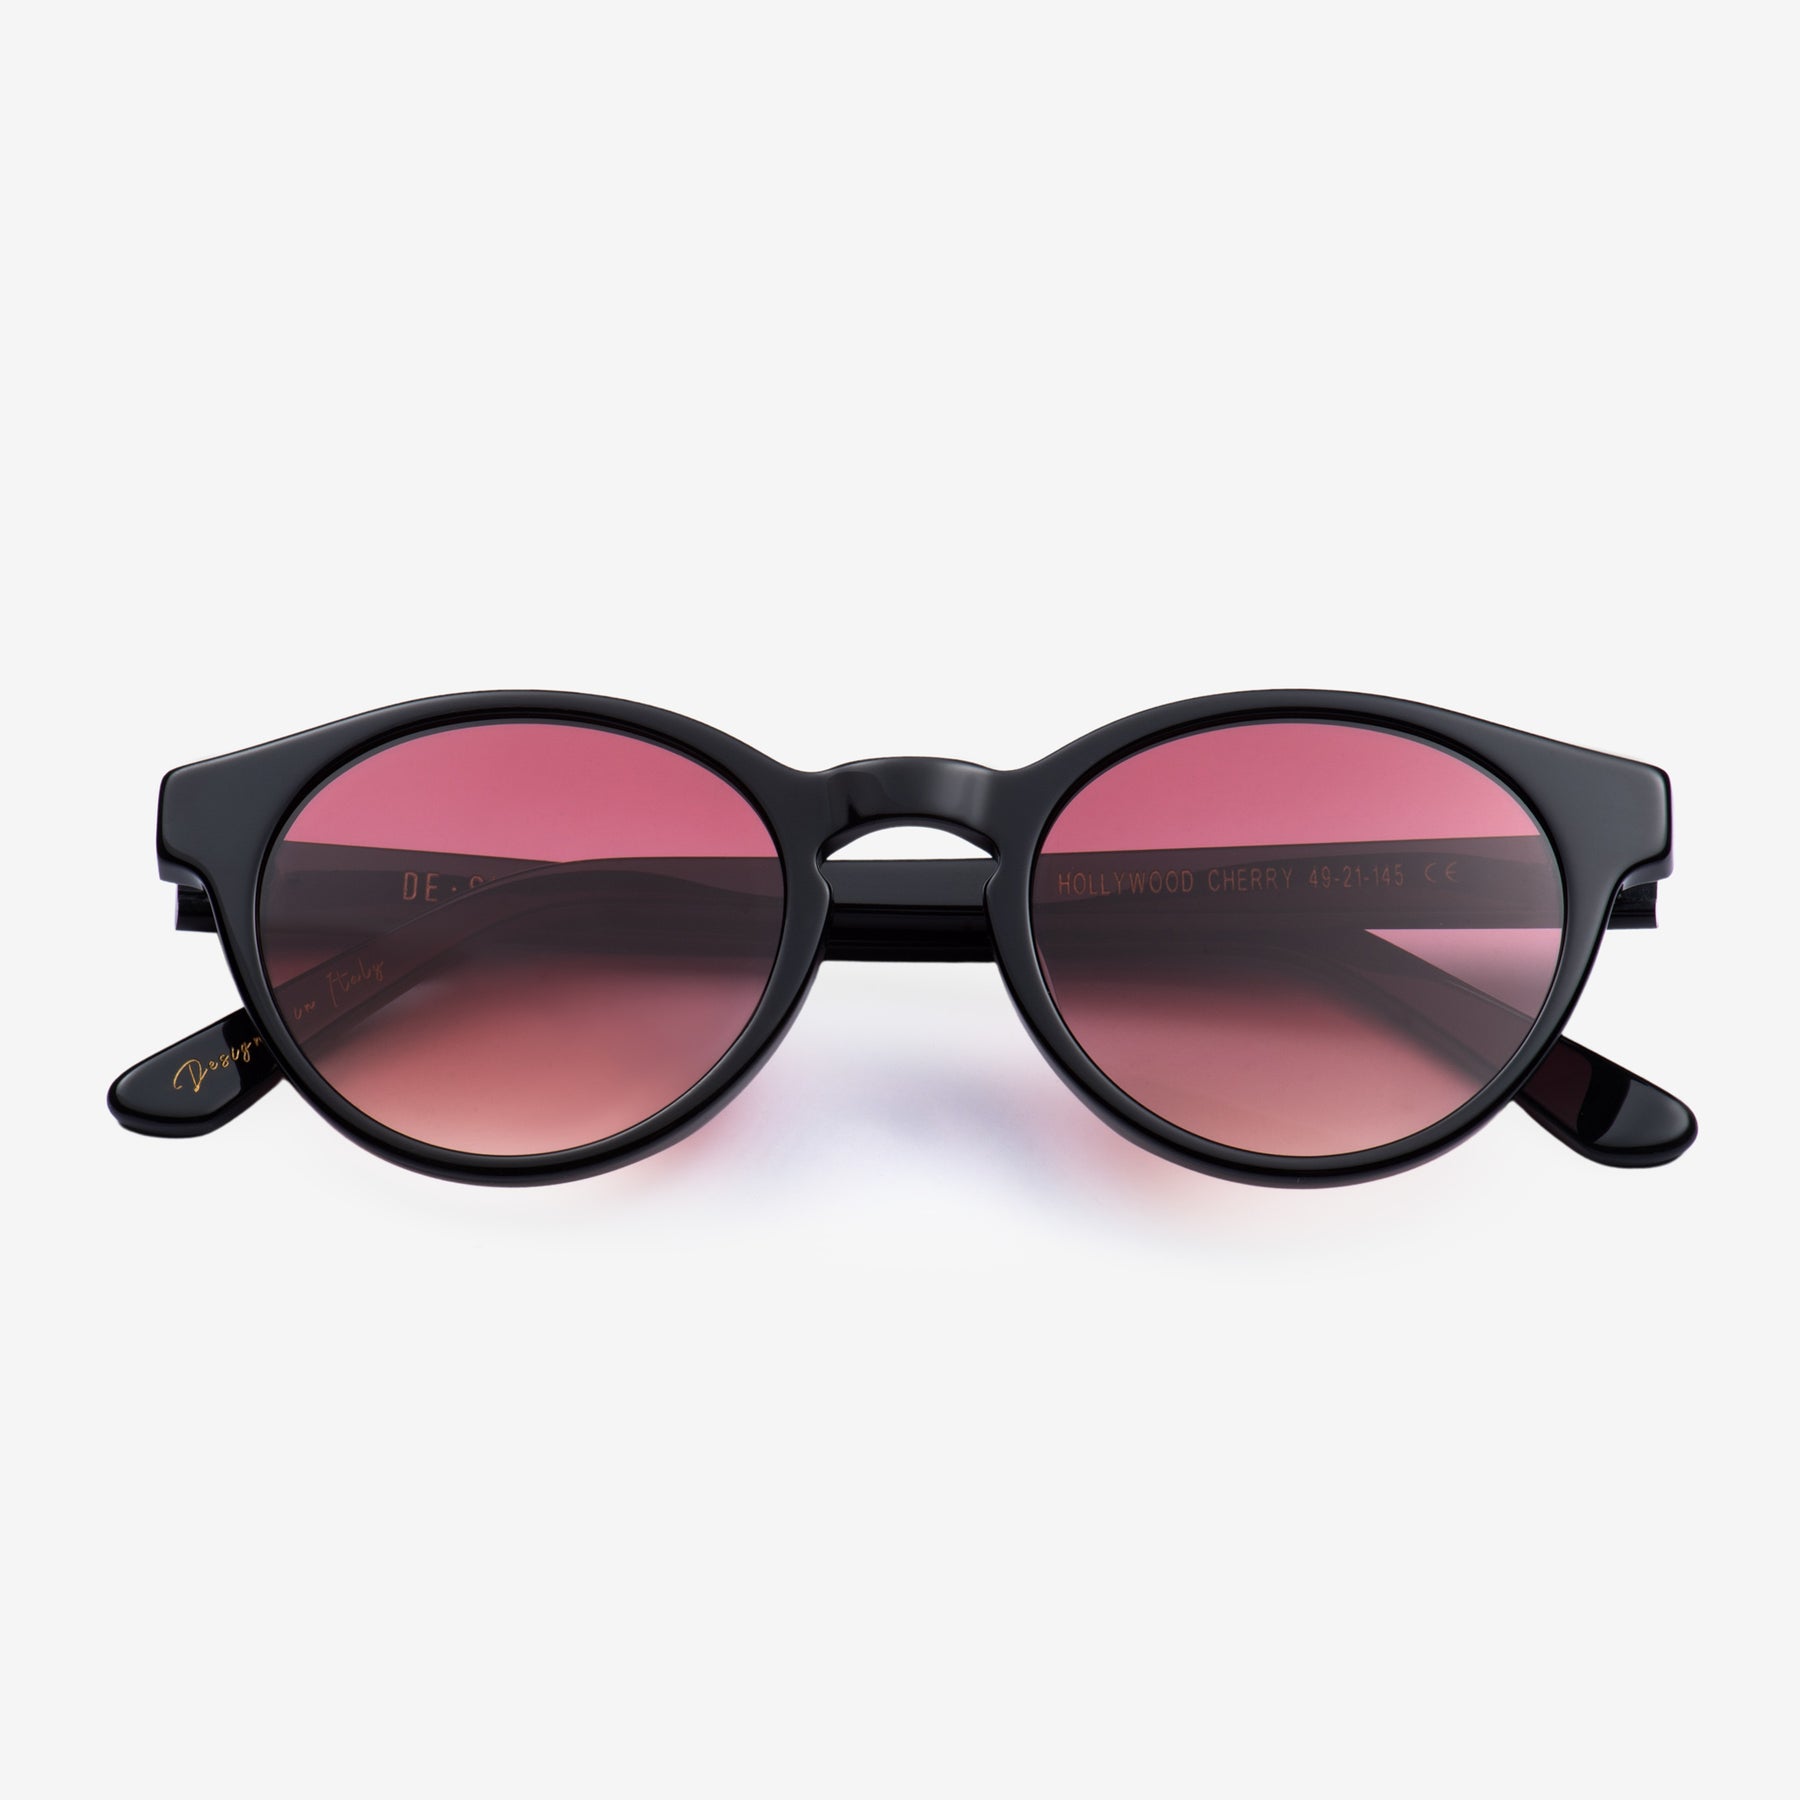 De-sunglasses| Hollywood cherry